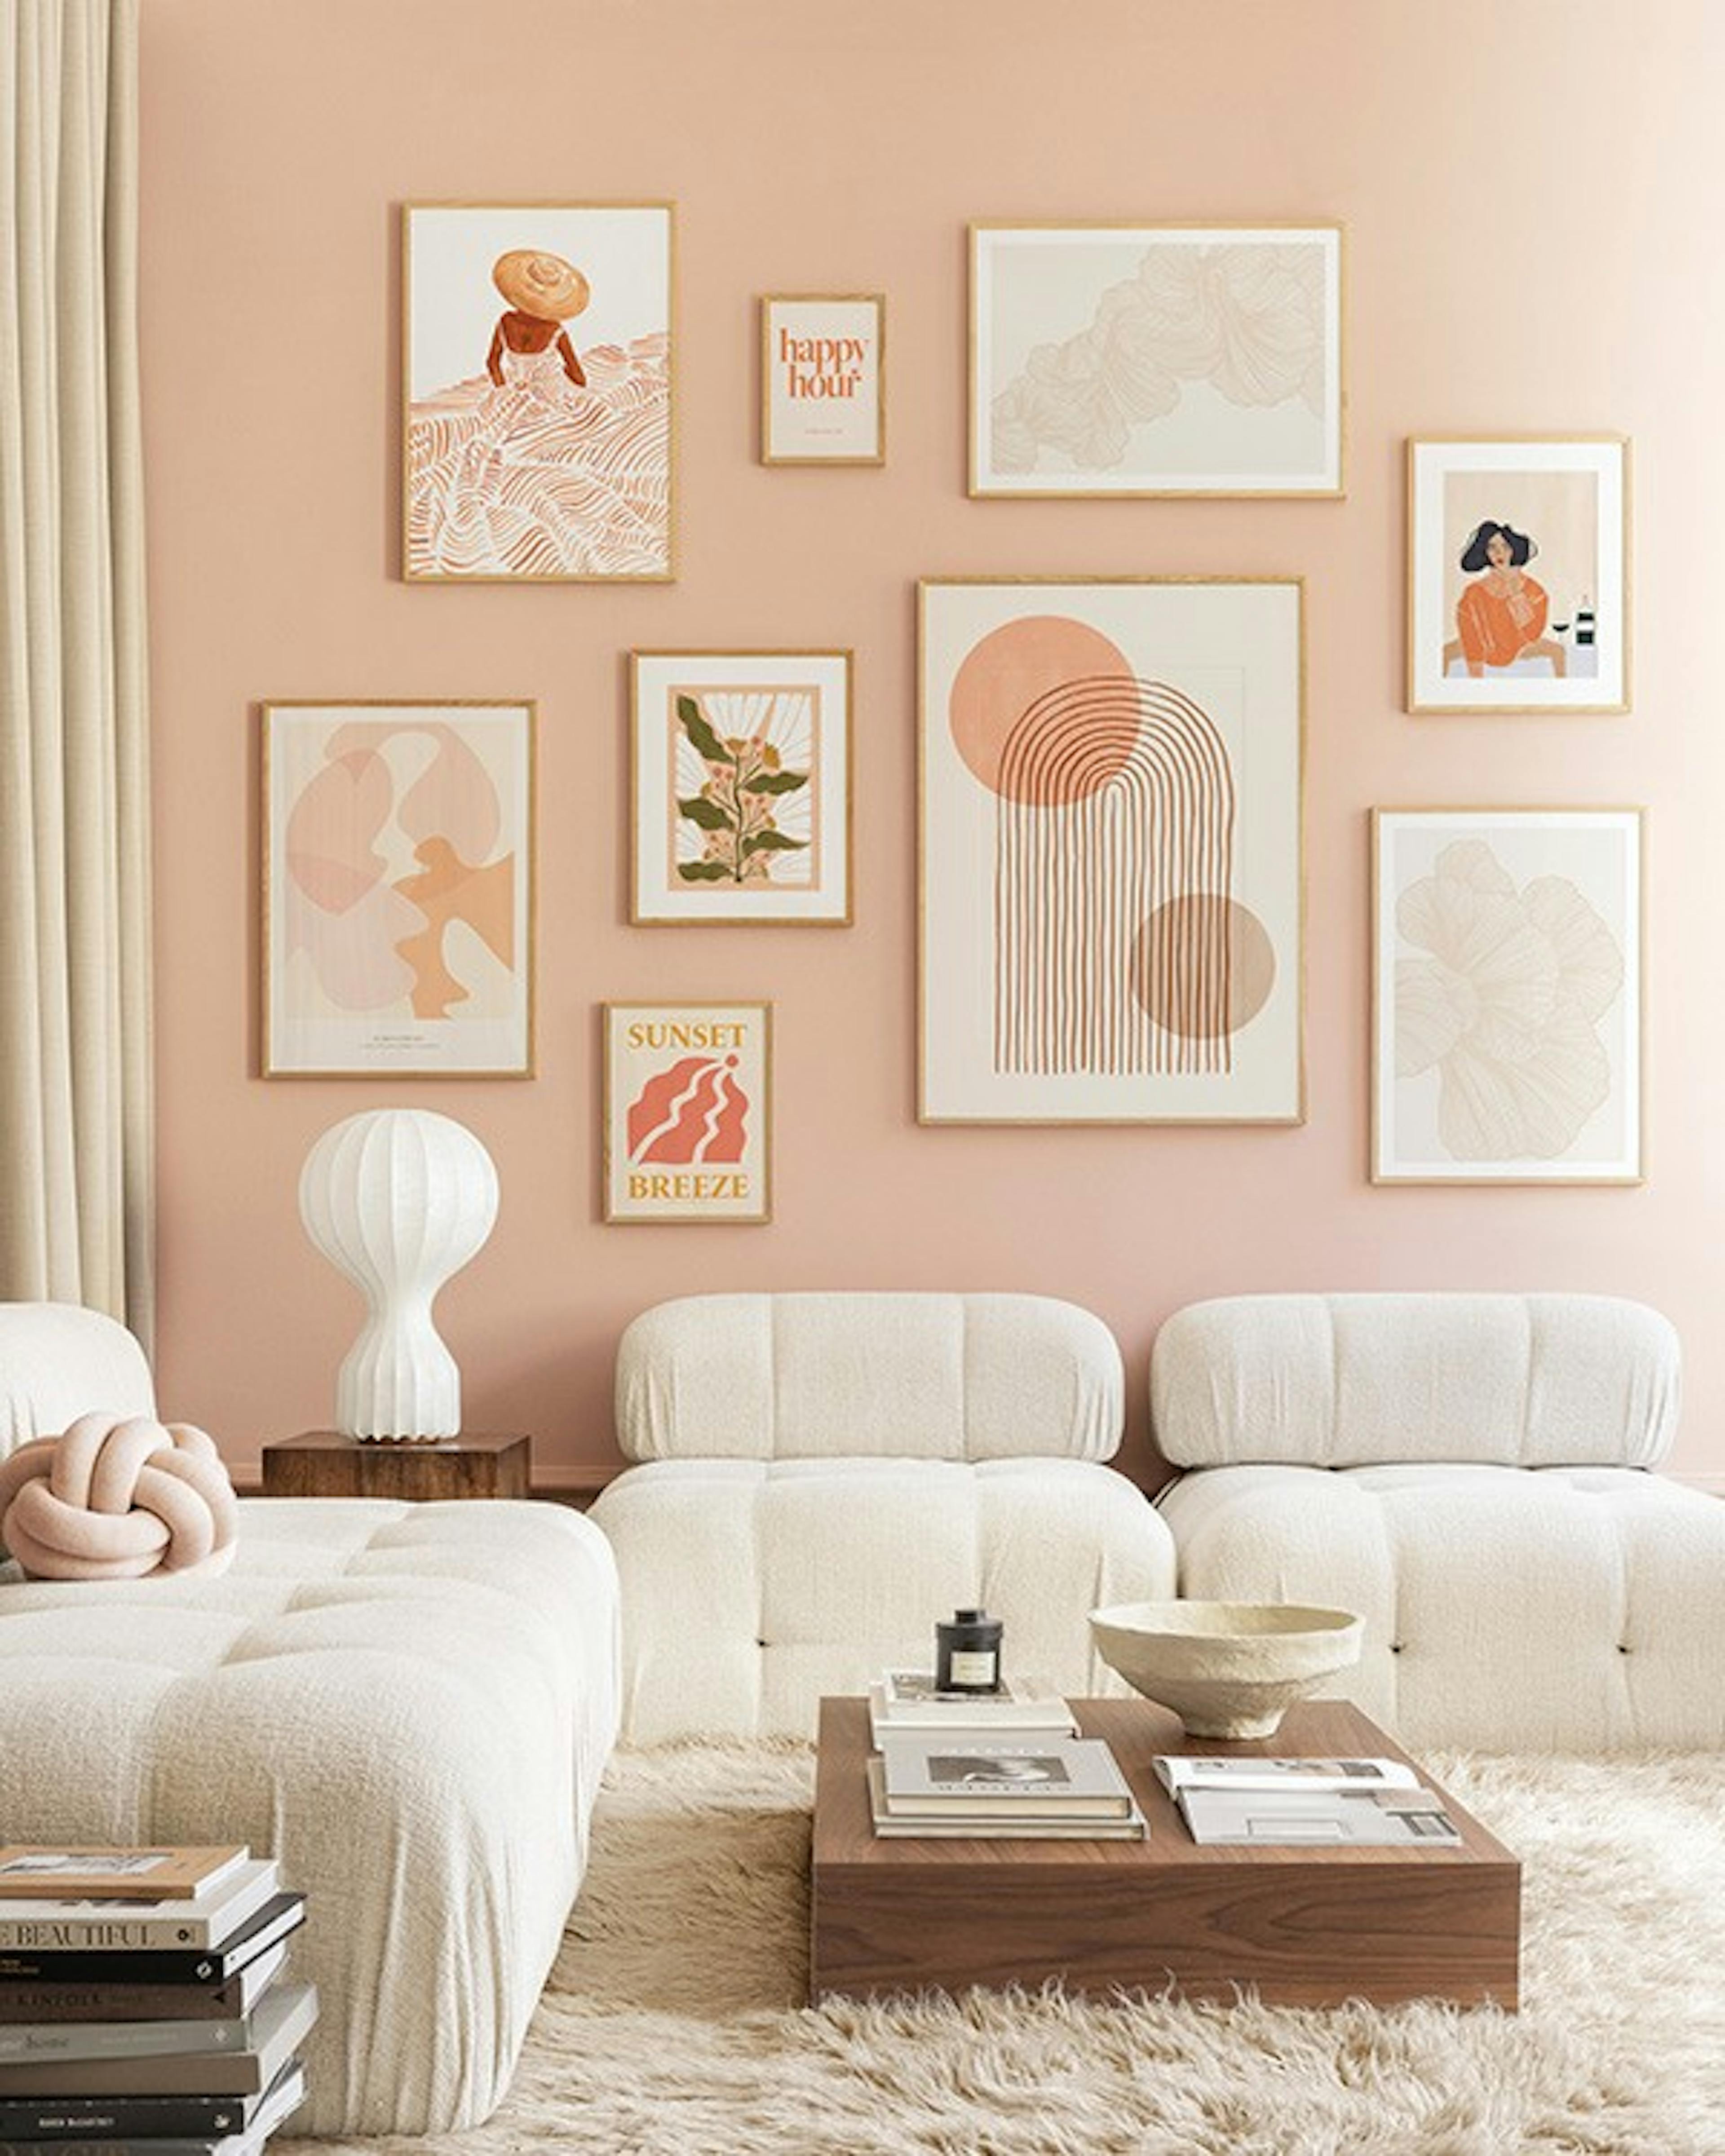 Peachy livingroom parede de quadros